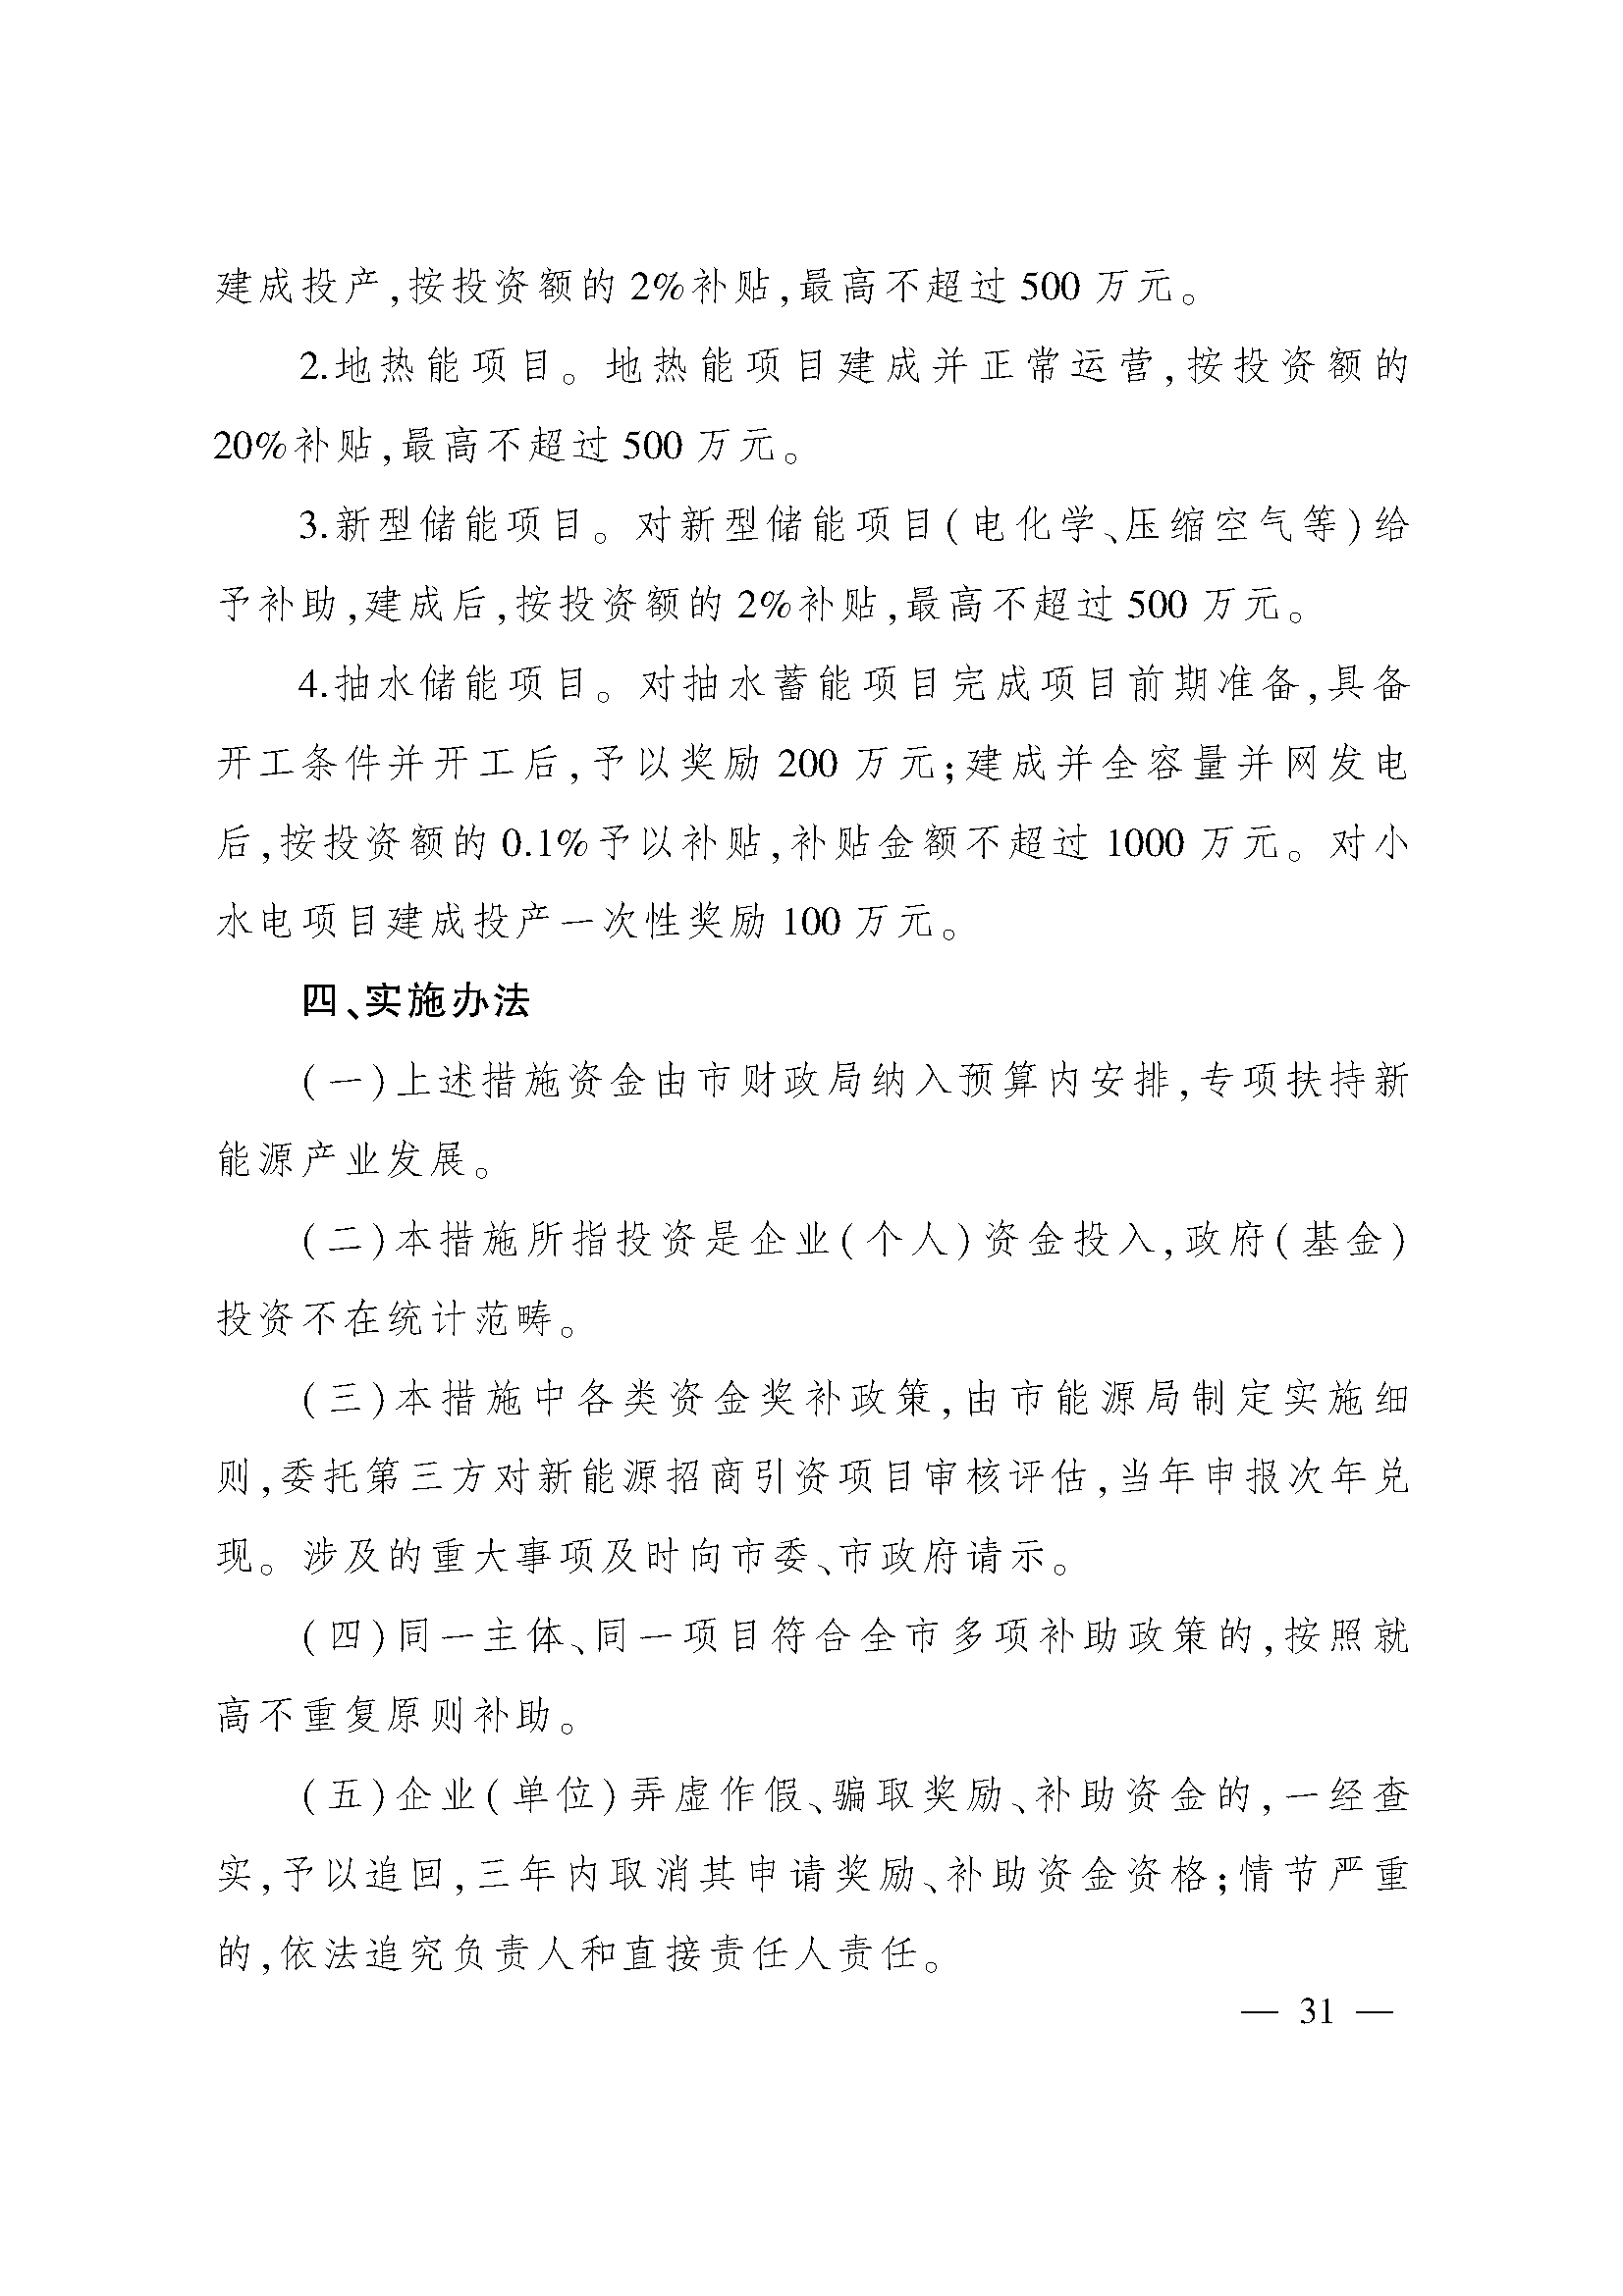 太原市人民政府办公室关于印发太原市招商引资若干措施的通知(图31)